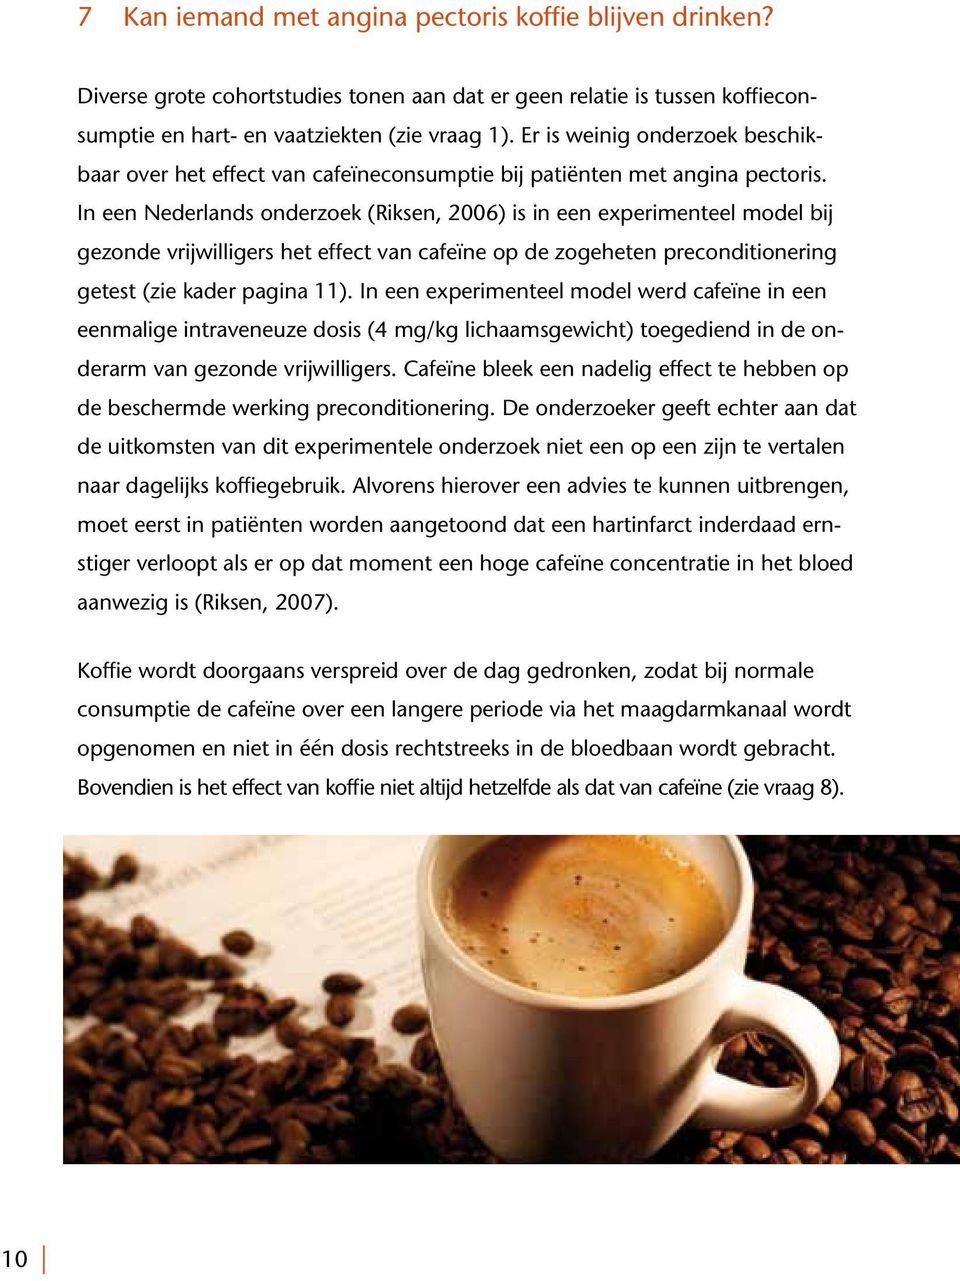 In een Nederlands onderzoek (Riksen, 2006) is in een experimenteel model bij gezonde vrijwilligers het effect van cafeïne op de zogeheten preconditionering getest (zie kader pagina 11).